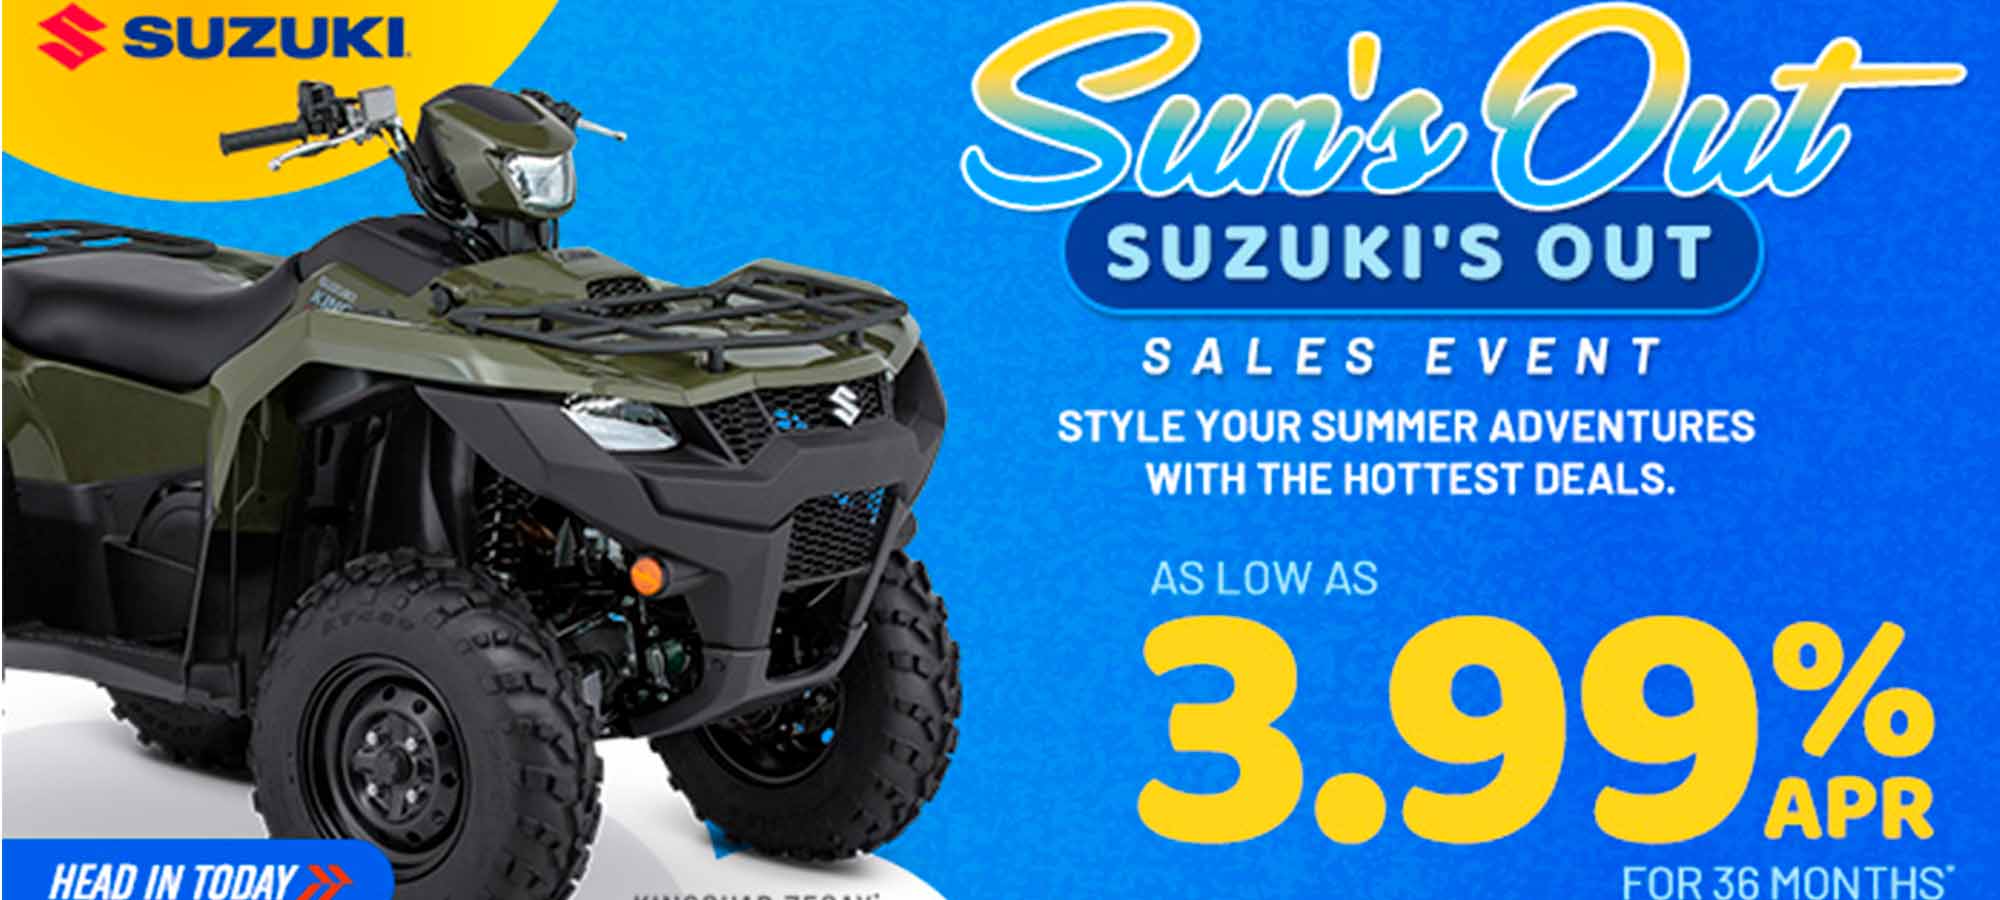 Suzuki US - Sun's Out Suzuki's Out Sales Event at Sunrise Marine & Motorsports